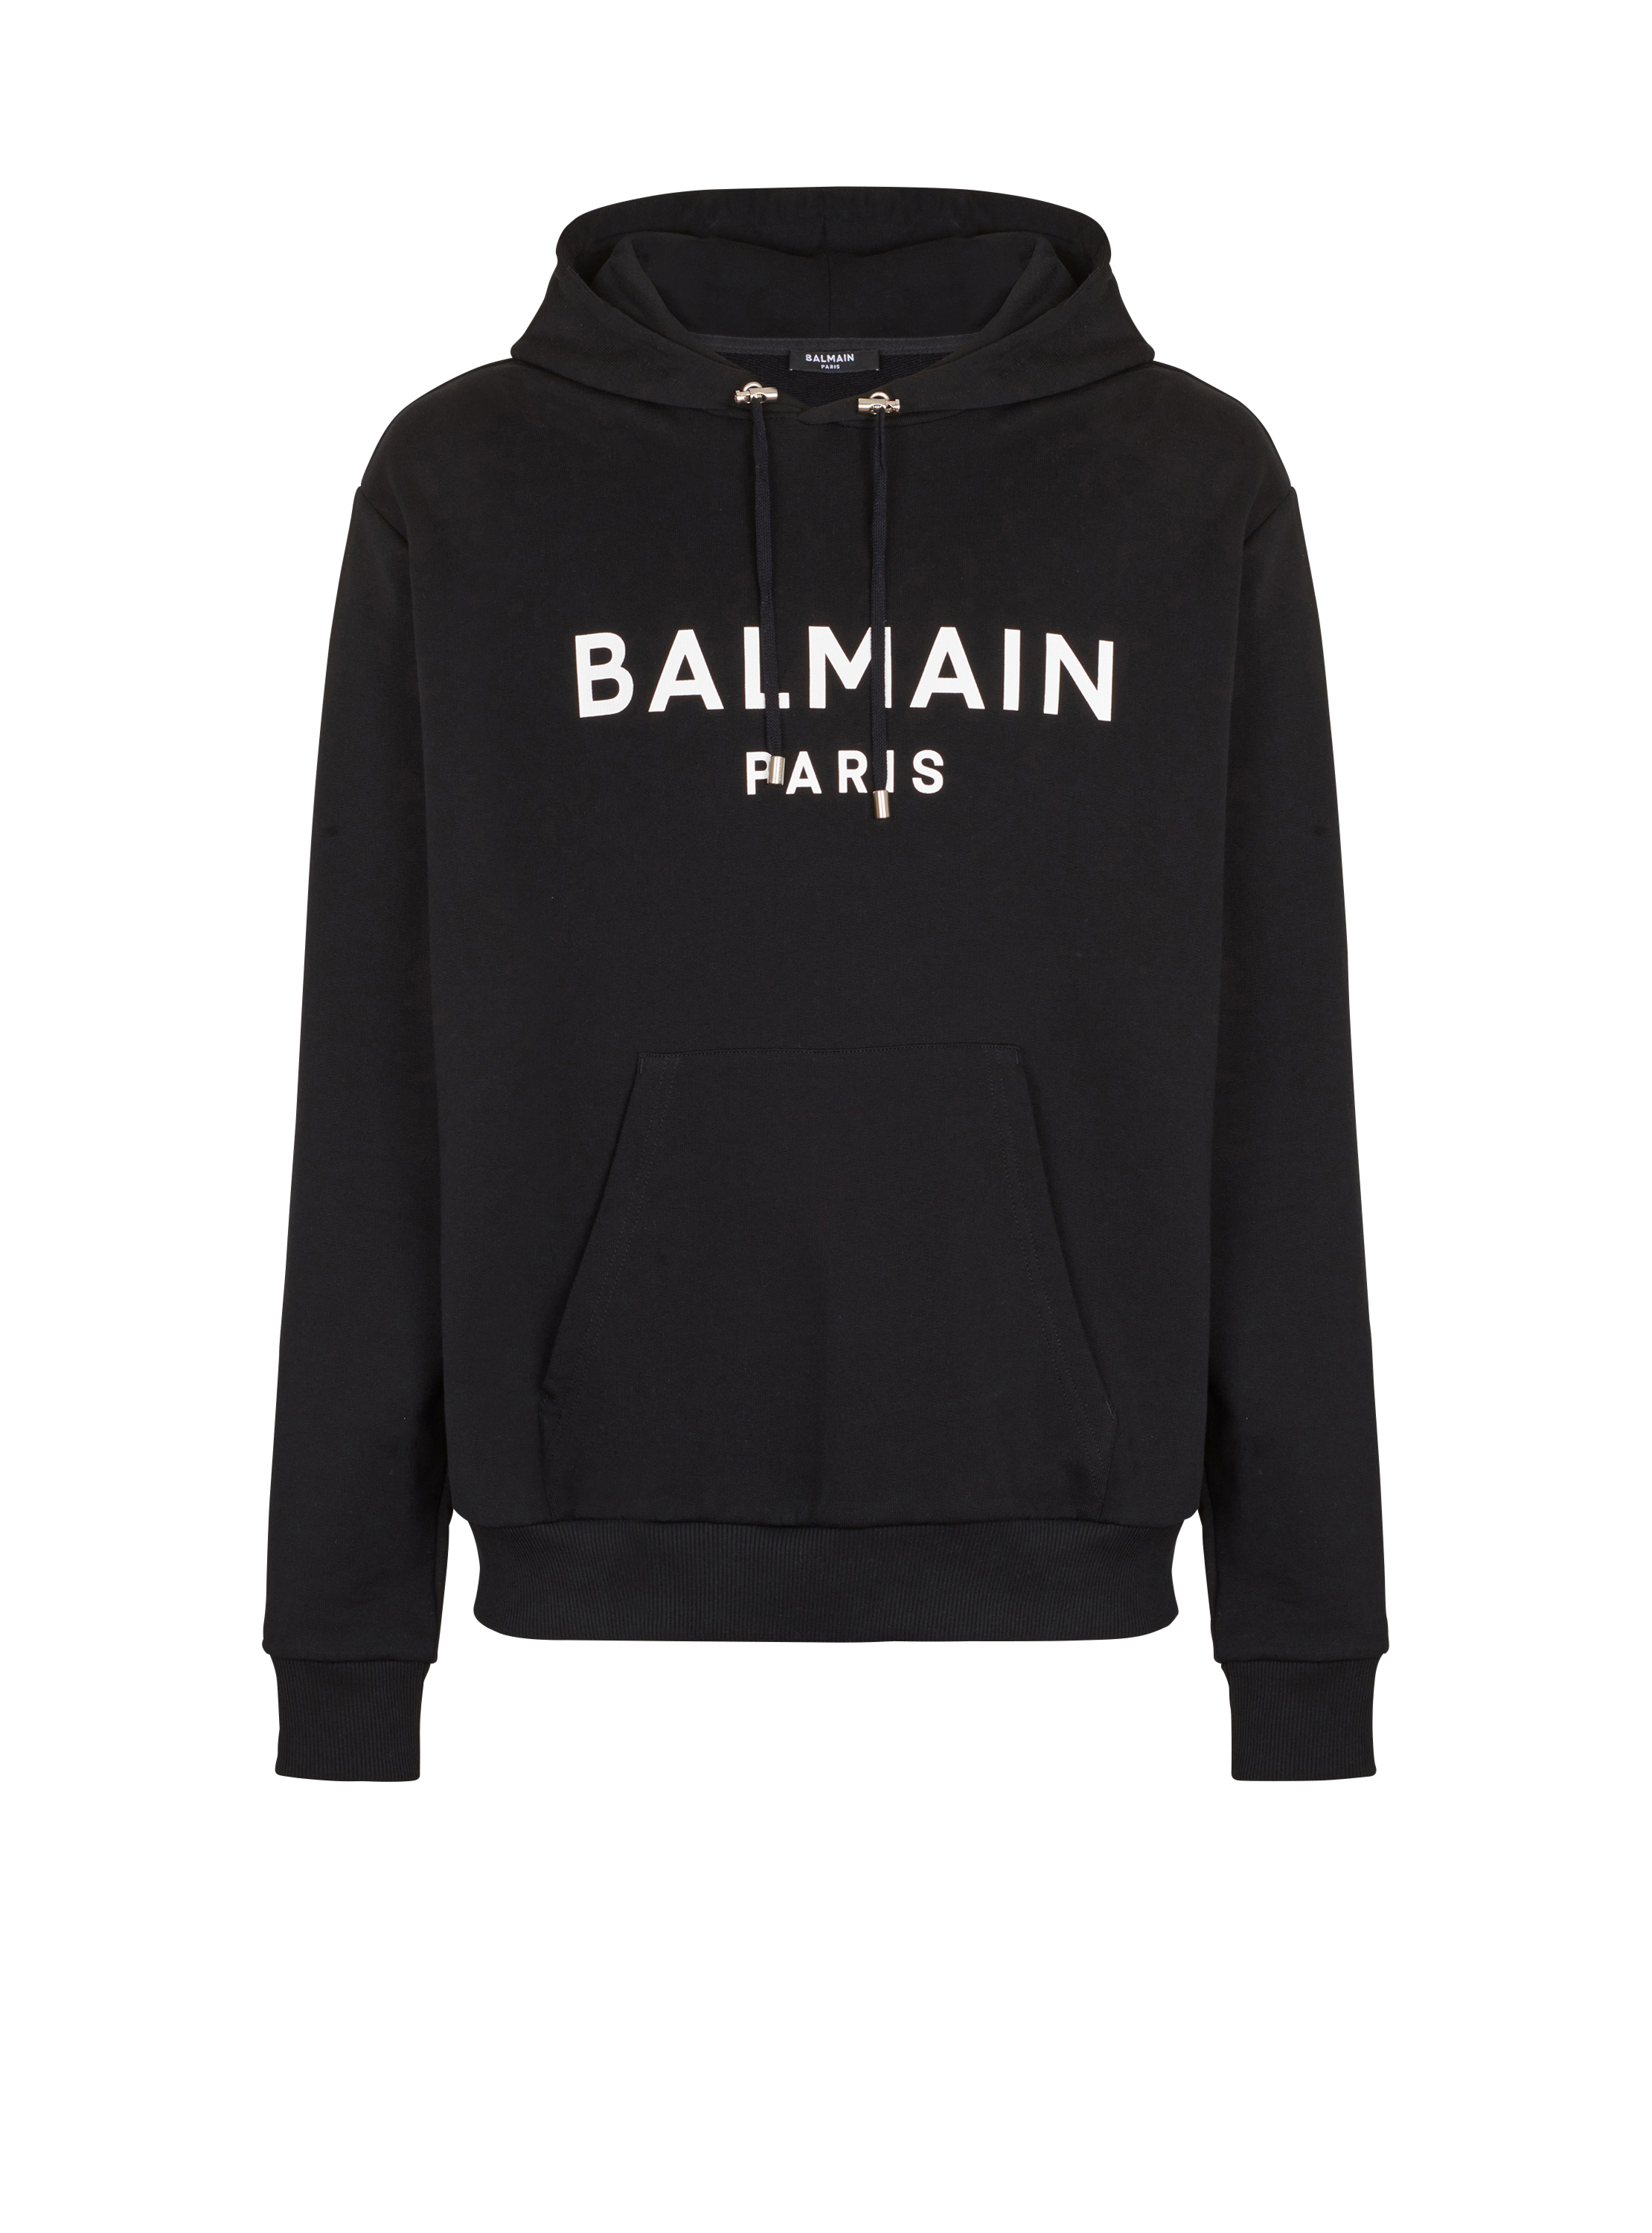 Cotton printed Balmain logo hoodie black - Men